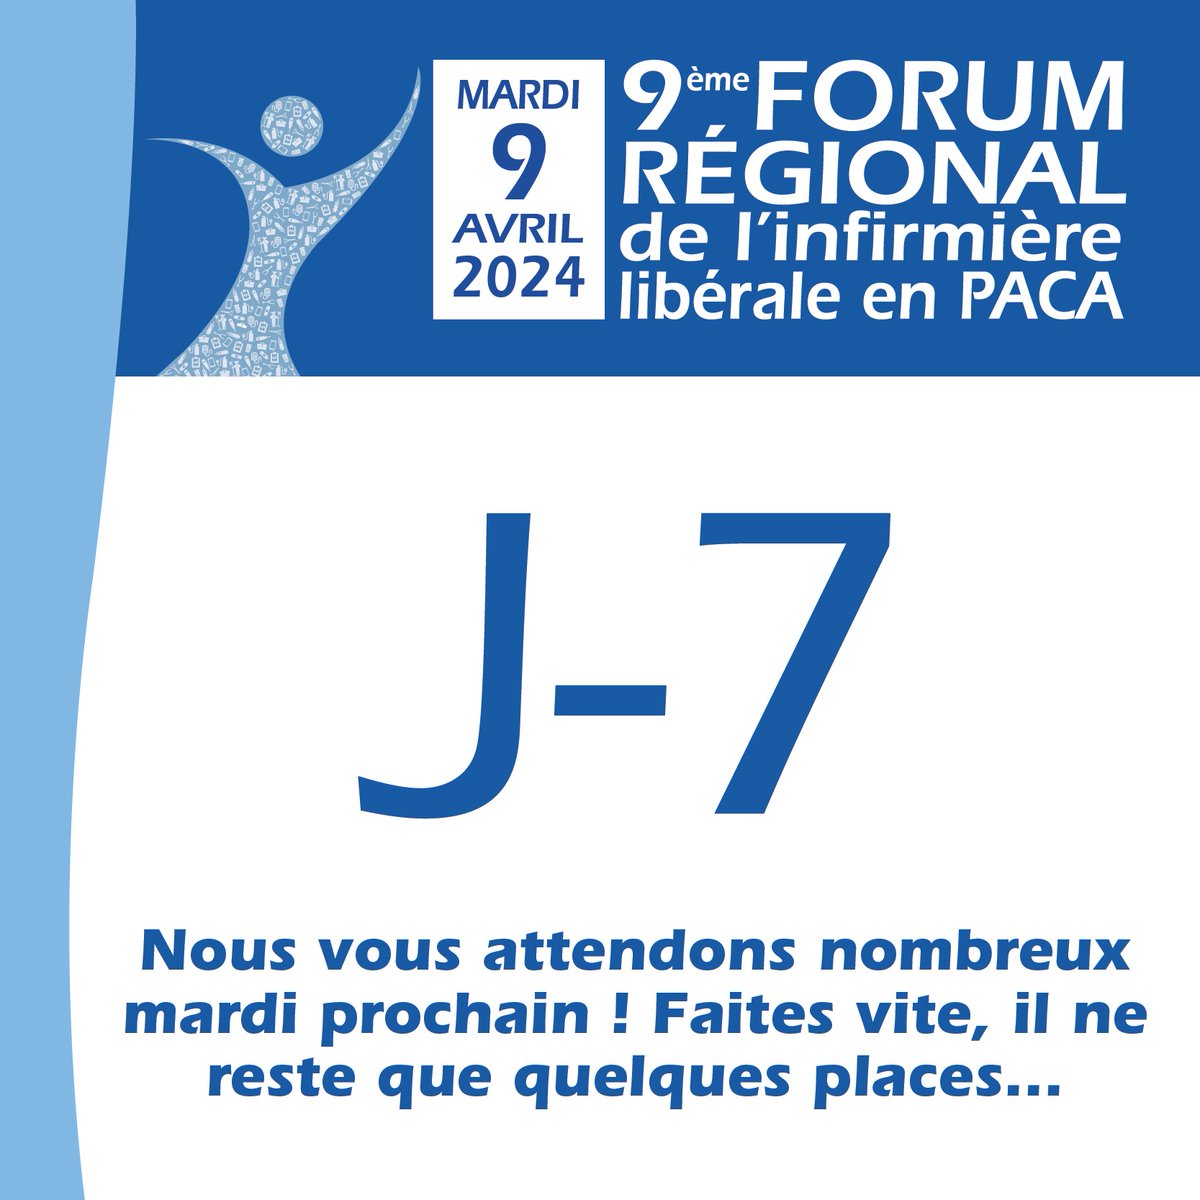 ⏰ J-7 avant le 9ème Forum régional de l'infirmière libérale en PACA 🤩 ✅ Retrouvons-nous ce 9 avril au Parc Chanot de Marseille et inscrivez-vous si cela n'est pas encore fait : forum-infirmiere-paca.fr/inscription/